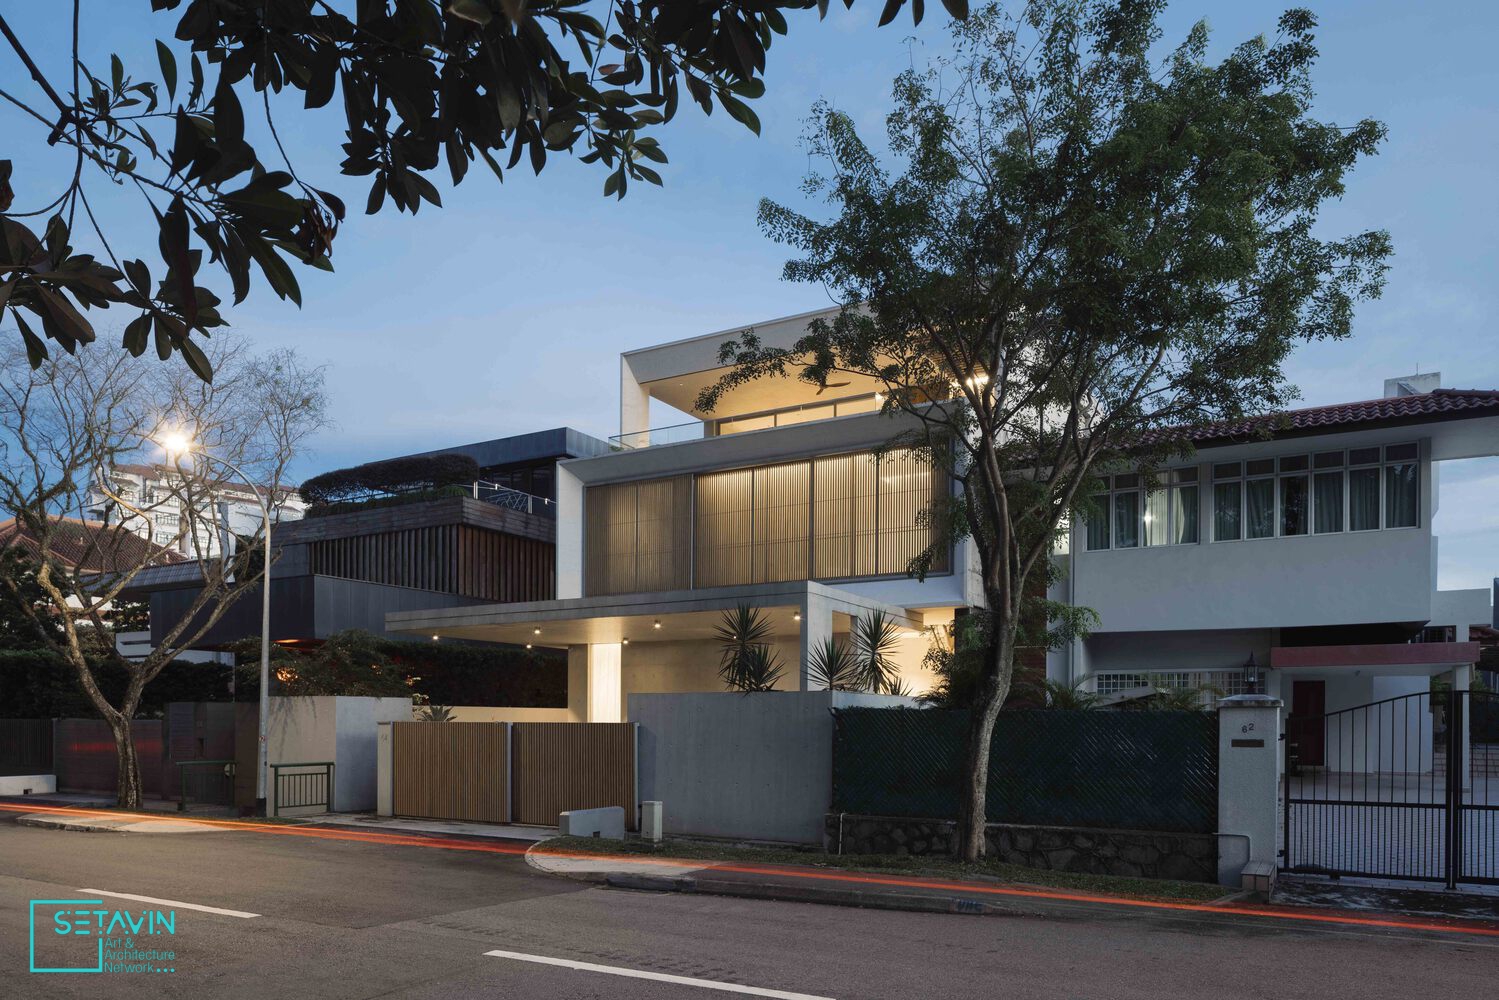 مسکونی , Frame House , تیم معماری , Ming Architects ، سنگاپور , پروژه های معماری , طراحی معماری , پروژه های ساخته شده ، ProjectsBuilt , مسکونی , Residential , طراحی داخلی , Interiors , سنگاپور , Singapore , هنر و معماری